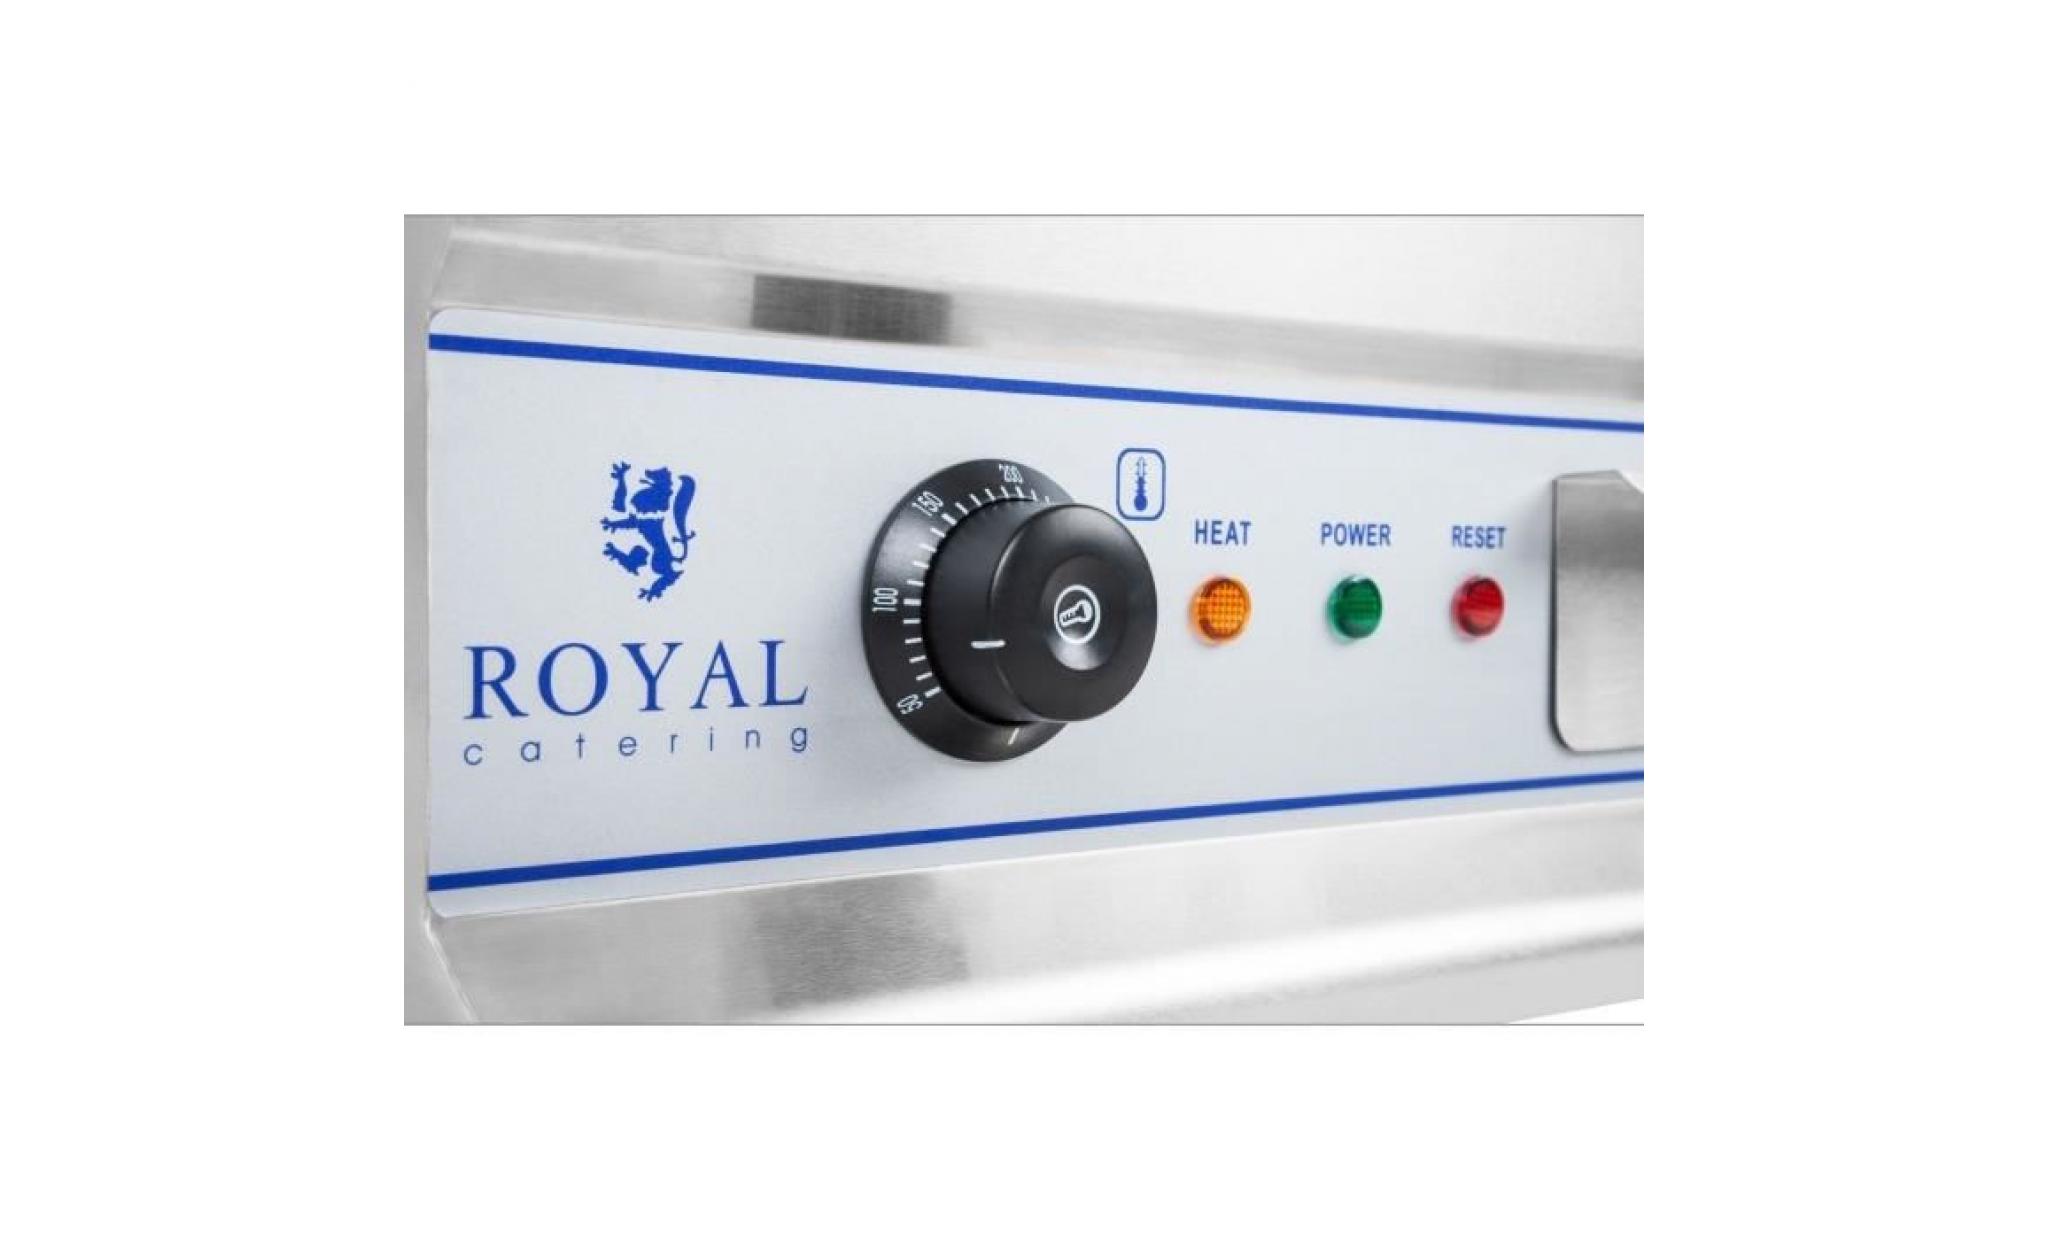 royal catering plancha électrique lisse protection antiéclaboussures dispositif d'écoulement largeur 50 cm 3.200w max 300°c rcg 50 pas cher